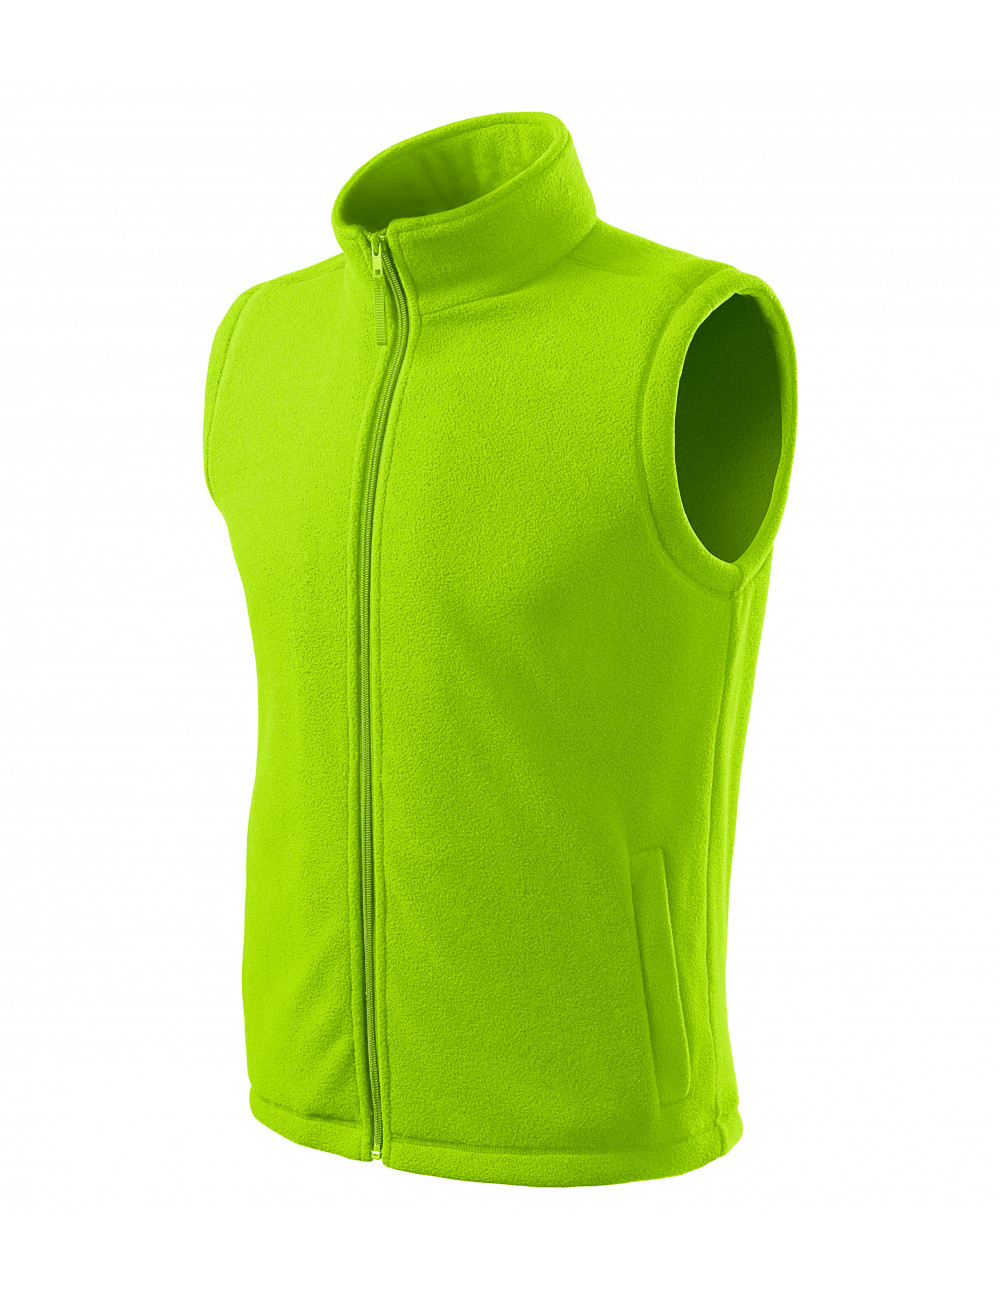 Unisex fleece vest next 518 lime Adler Rimeck